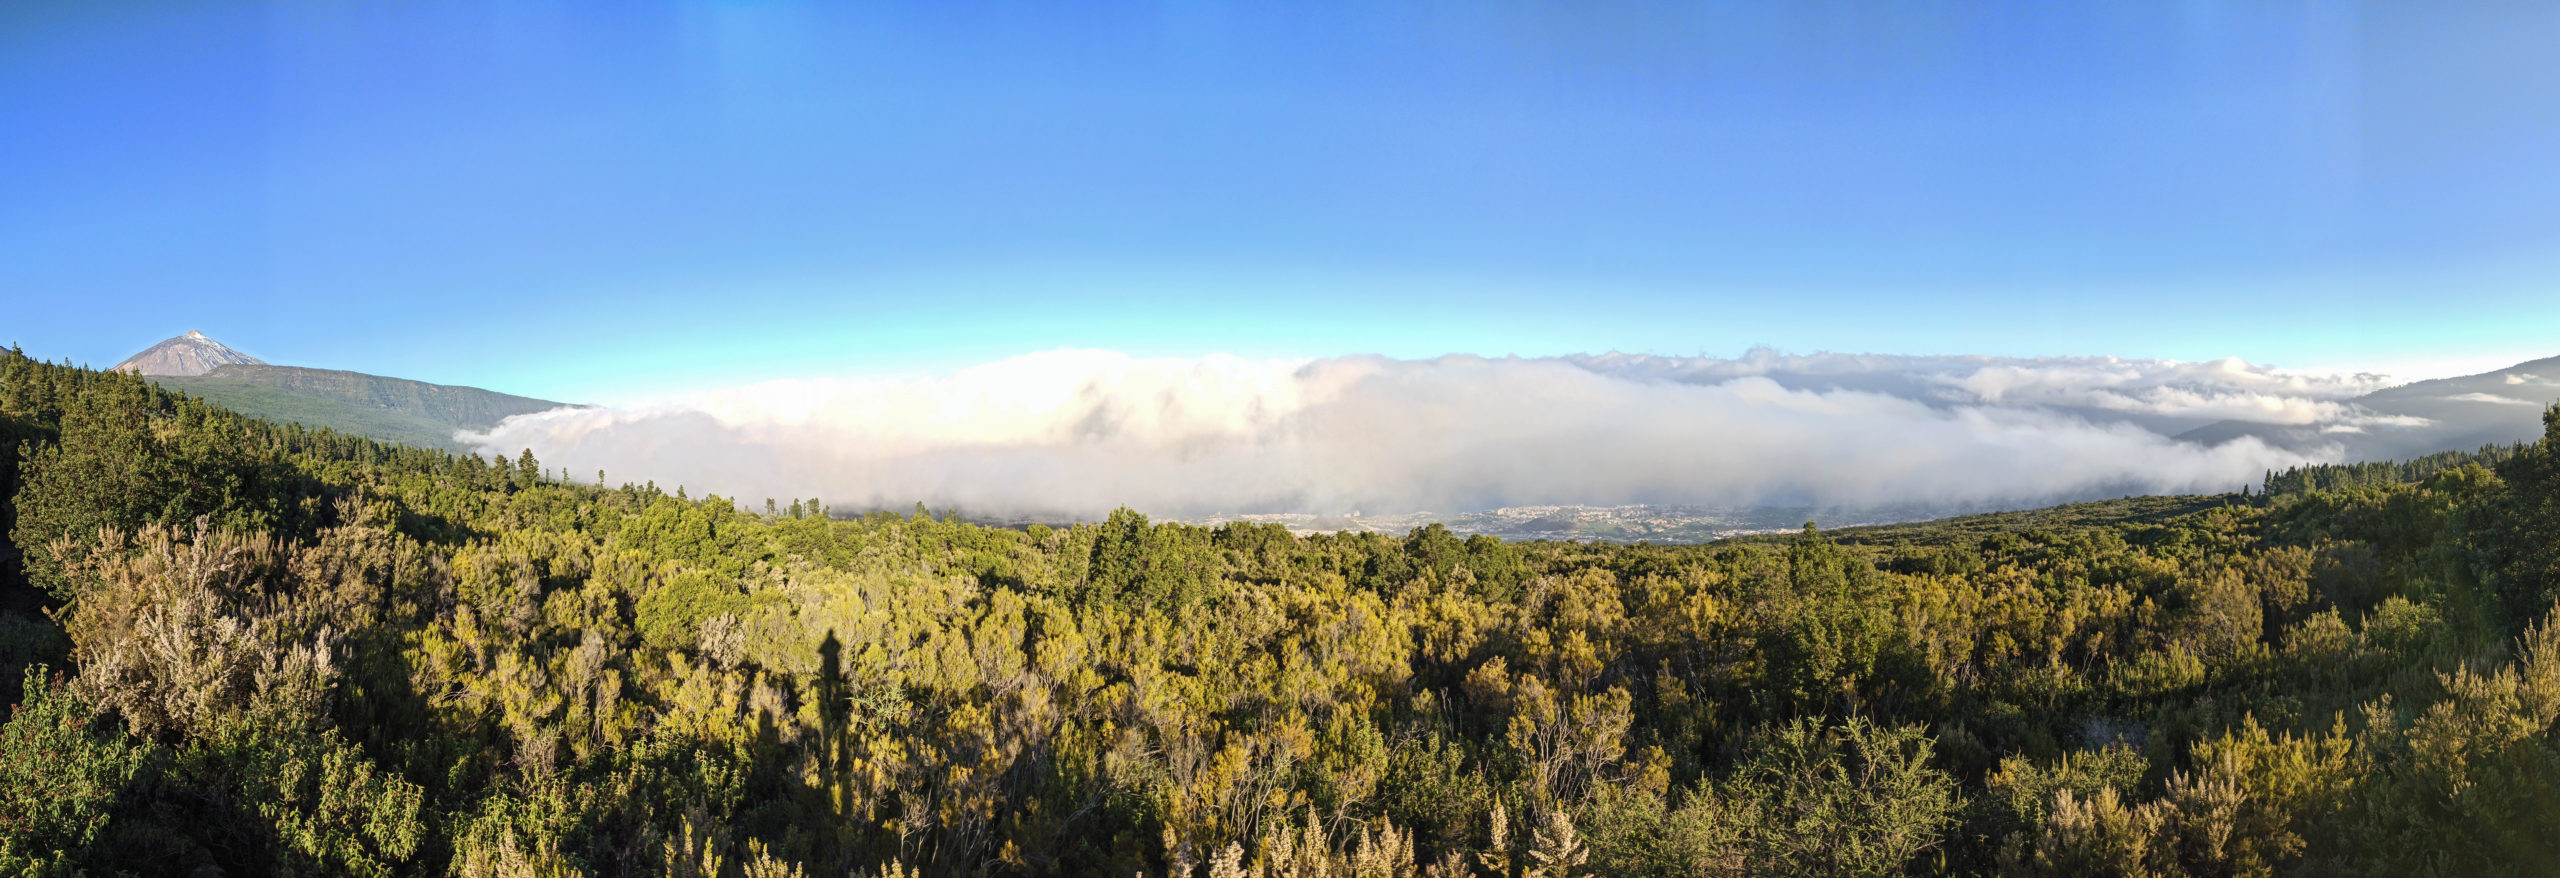 Panorama sur Tenerife, avec la mer de nuages au dessus de la forêt, et le volcan Teide en arrière plan